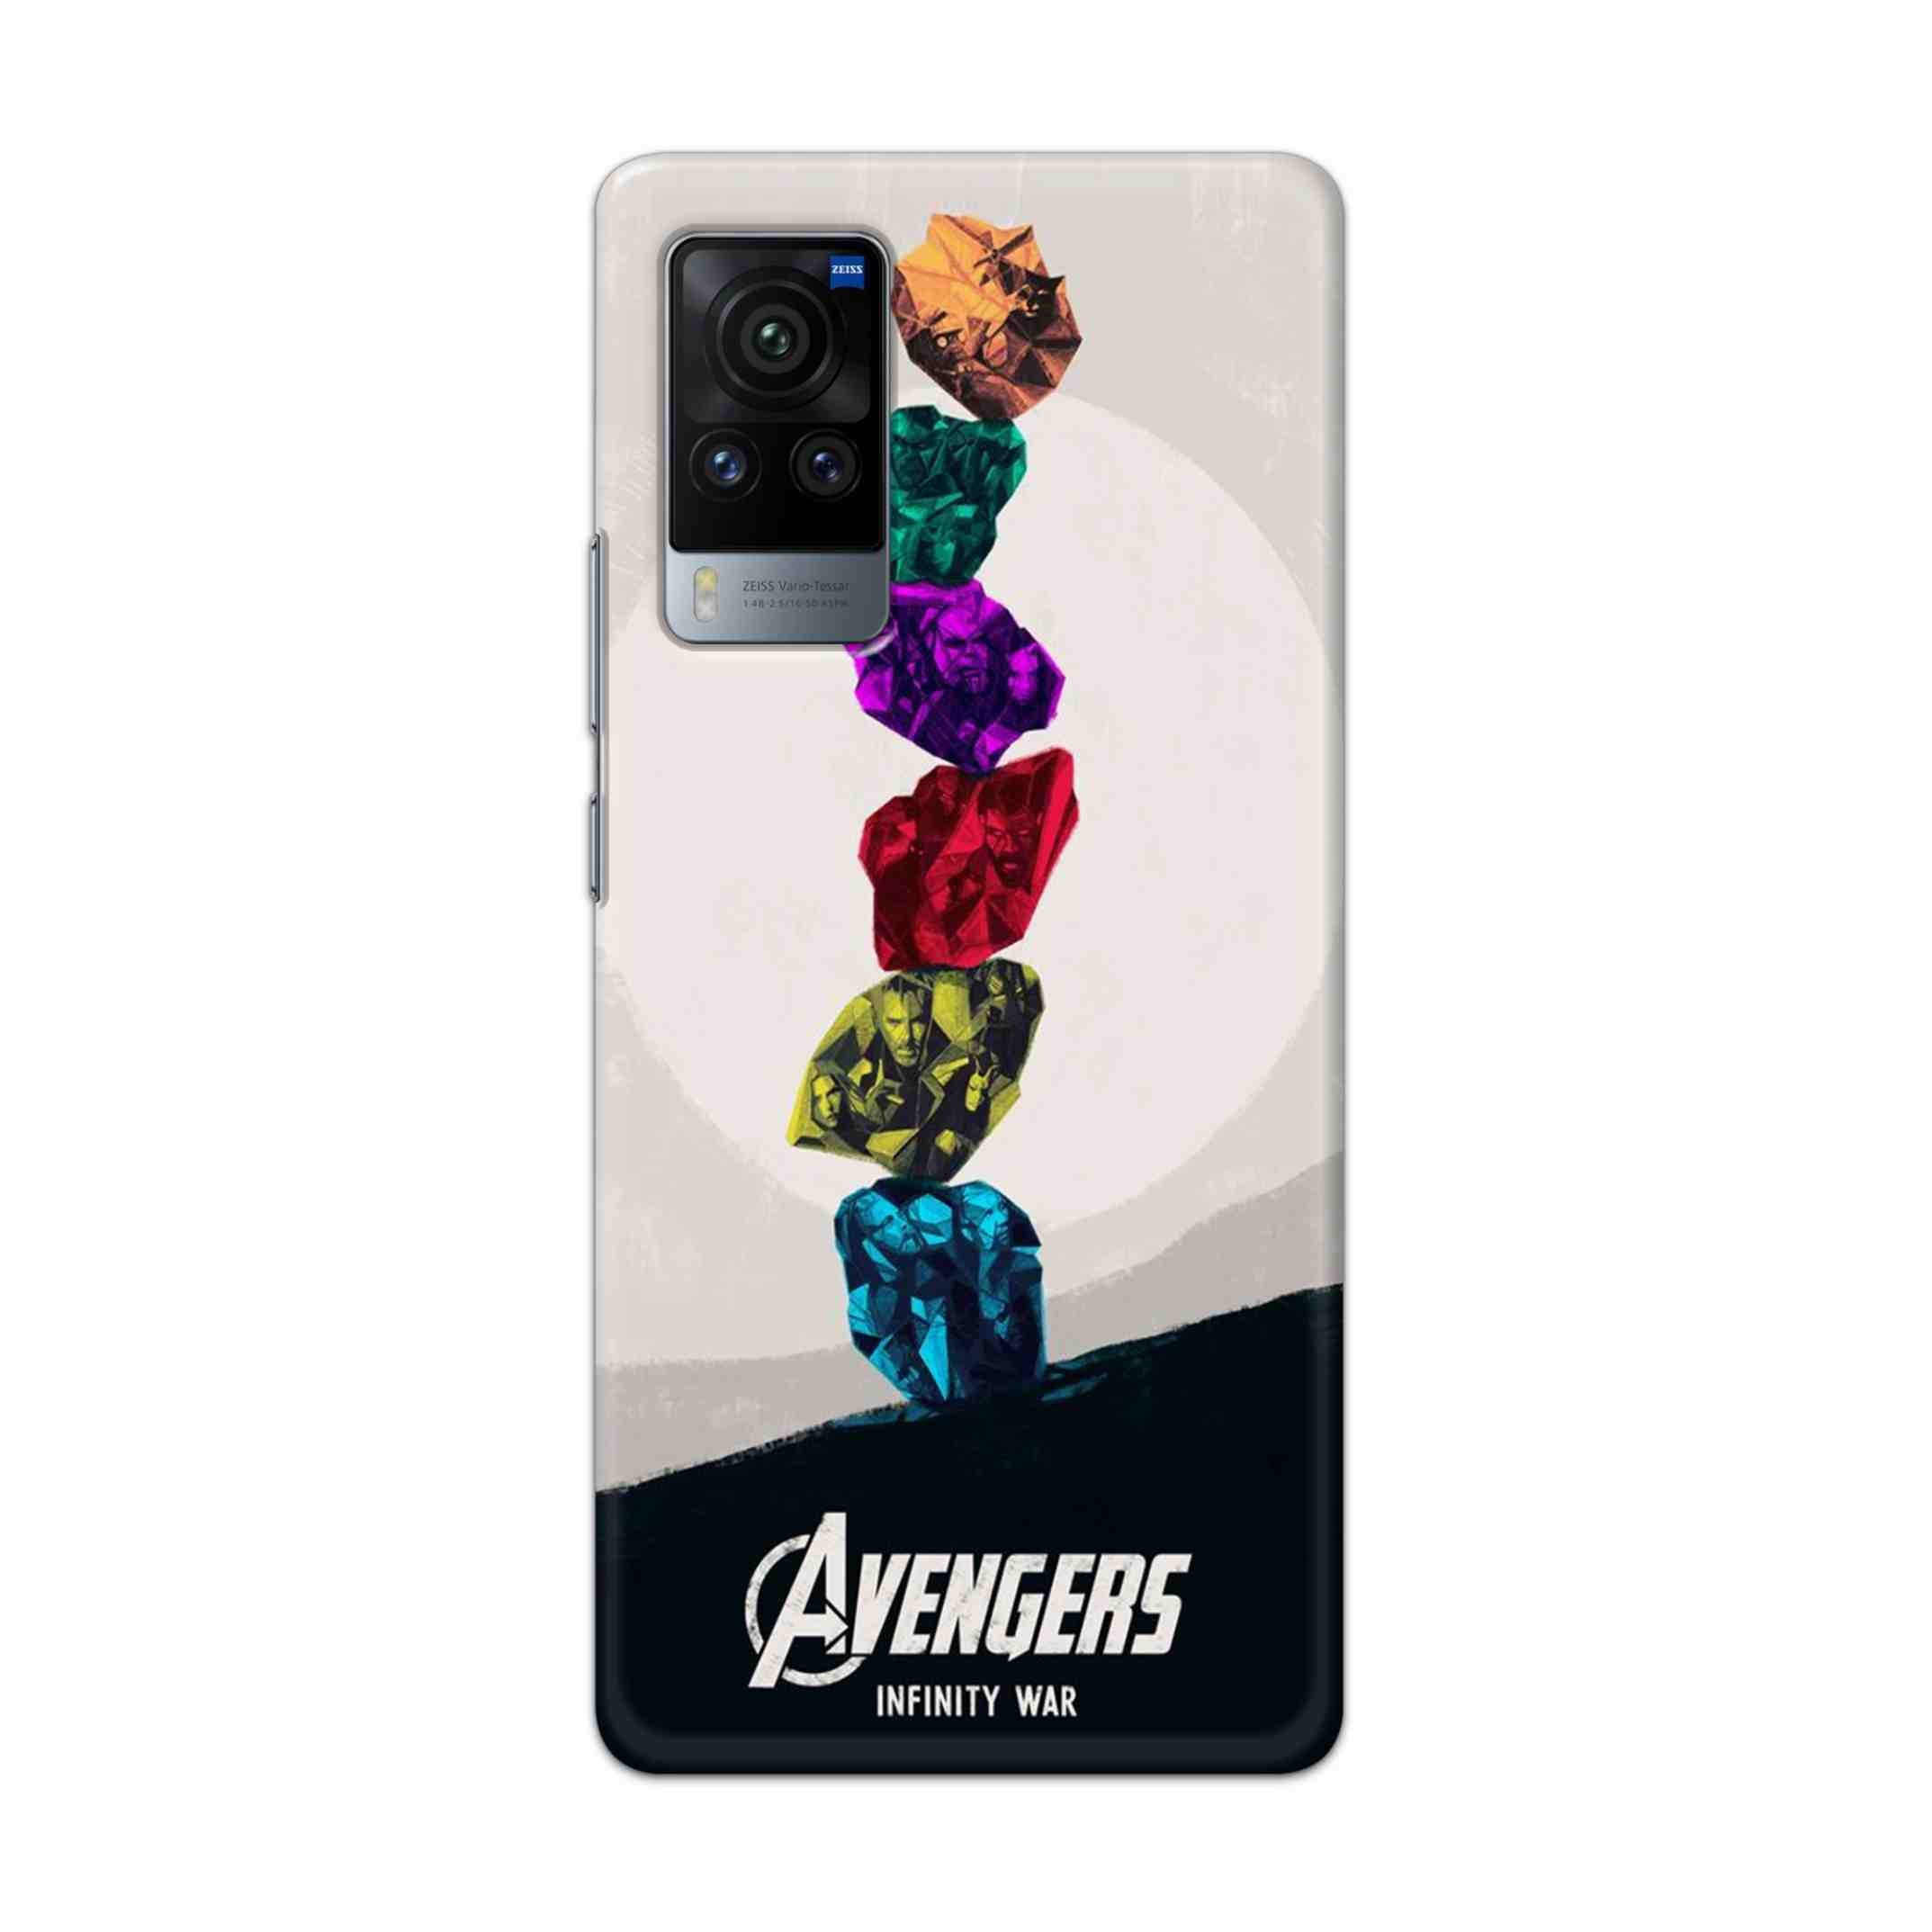 Buy Avengers Stone Hard Back Mobile Phone Case Cover For Vivo X60 Pro Online